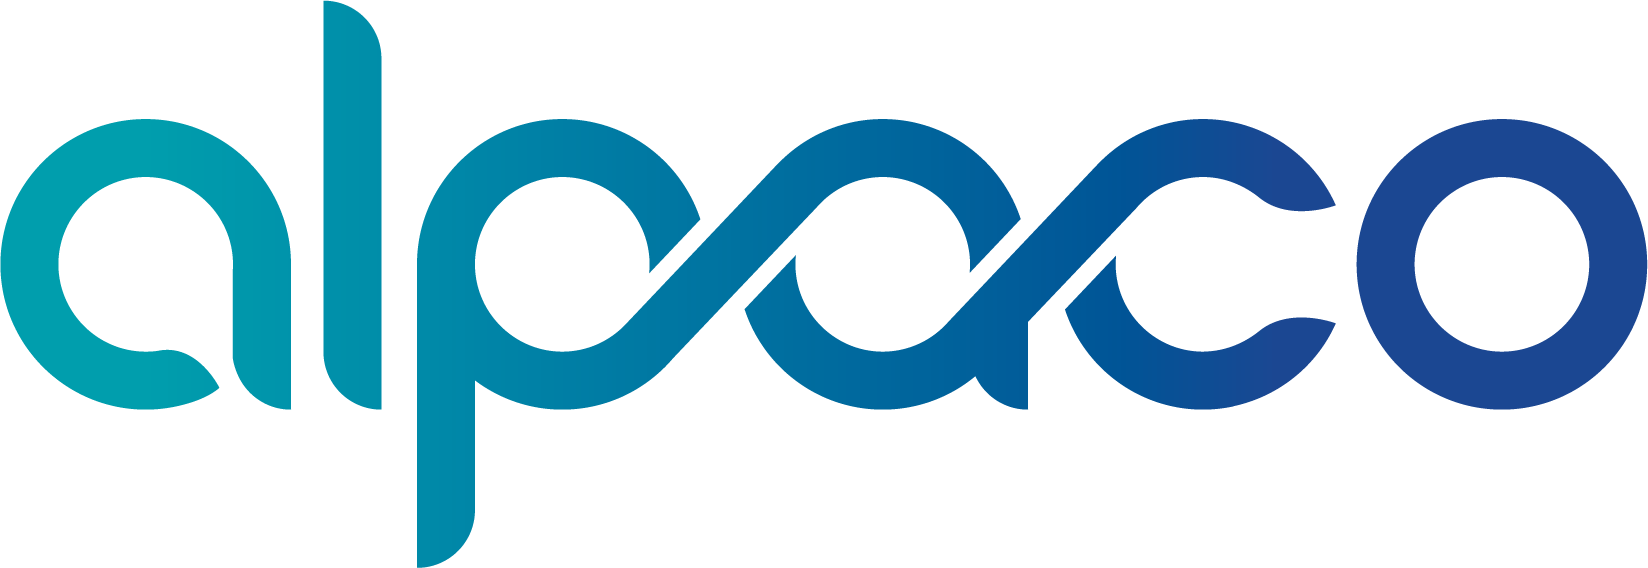 알파코의 로고 이미지